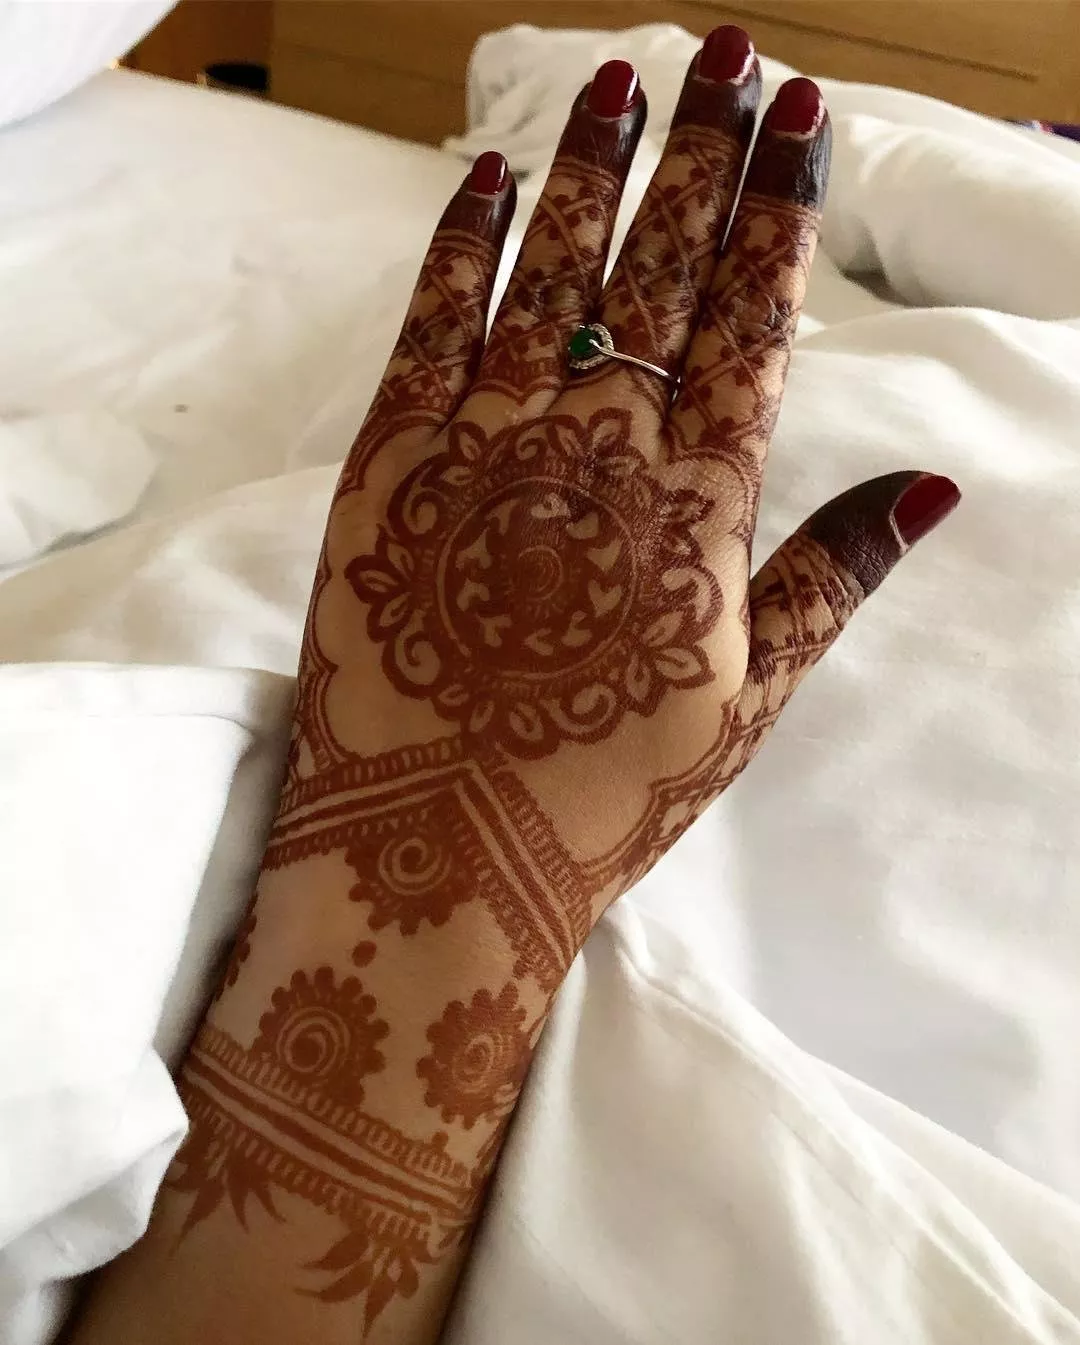 للعروس المستقبلية، زيّني يديكِ بأجمل موديلات نقش حناء اماراتي